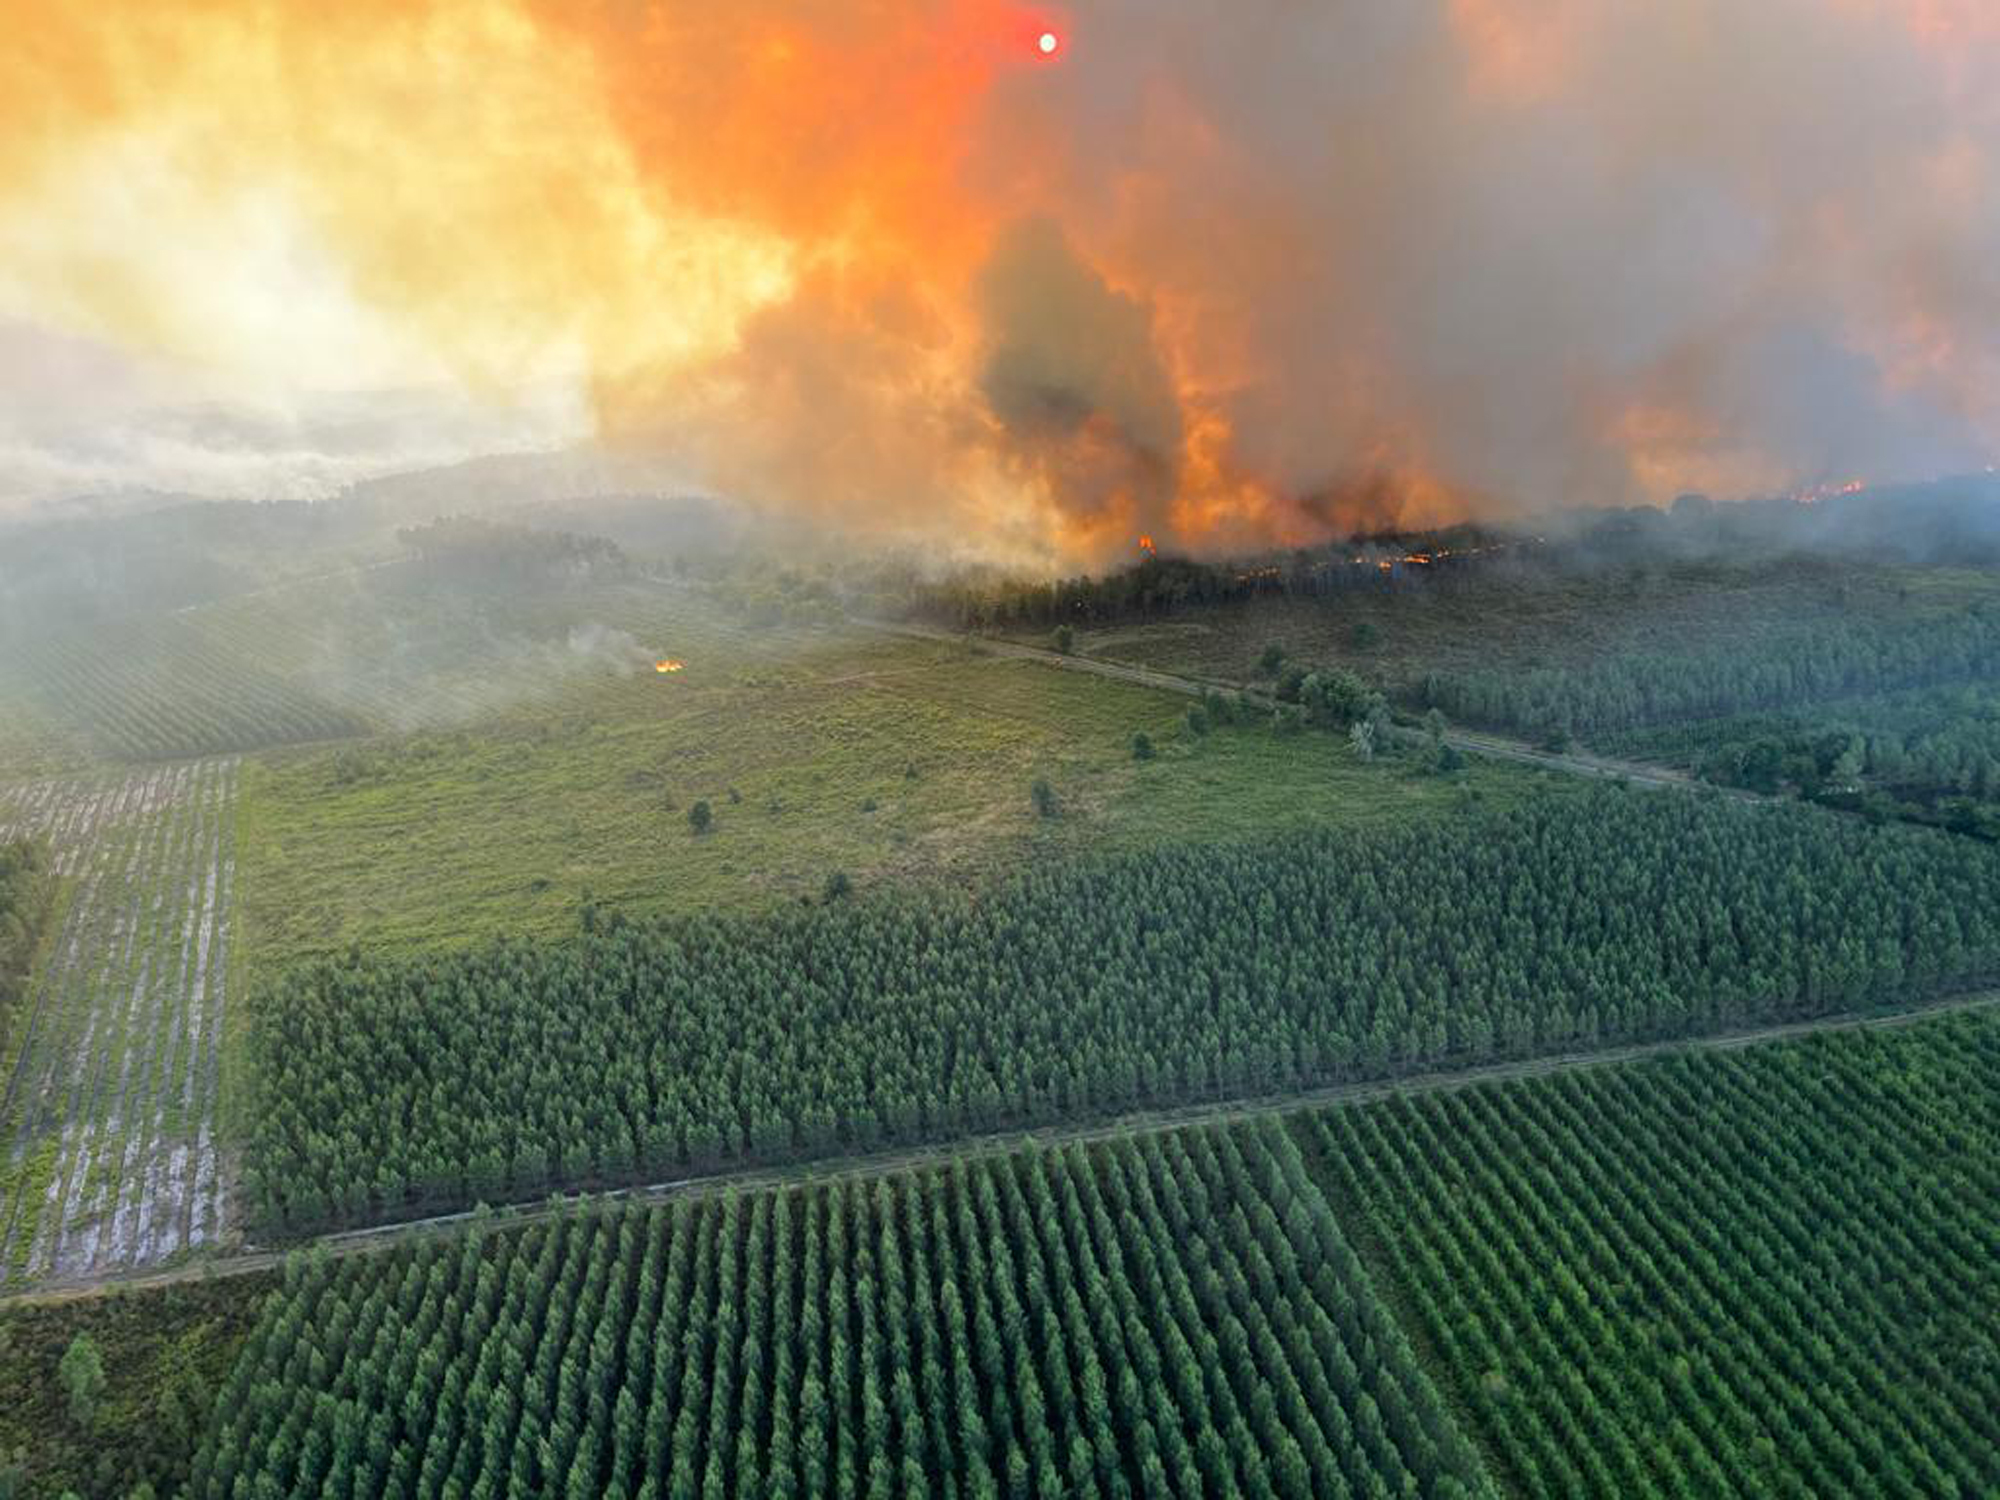 A field on fire